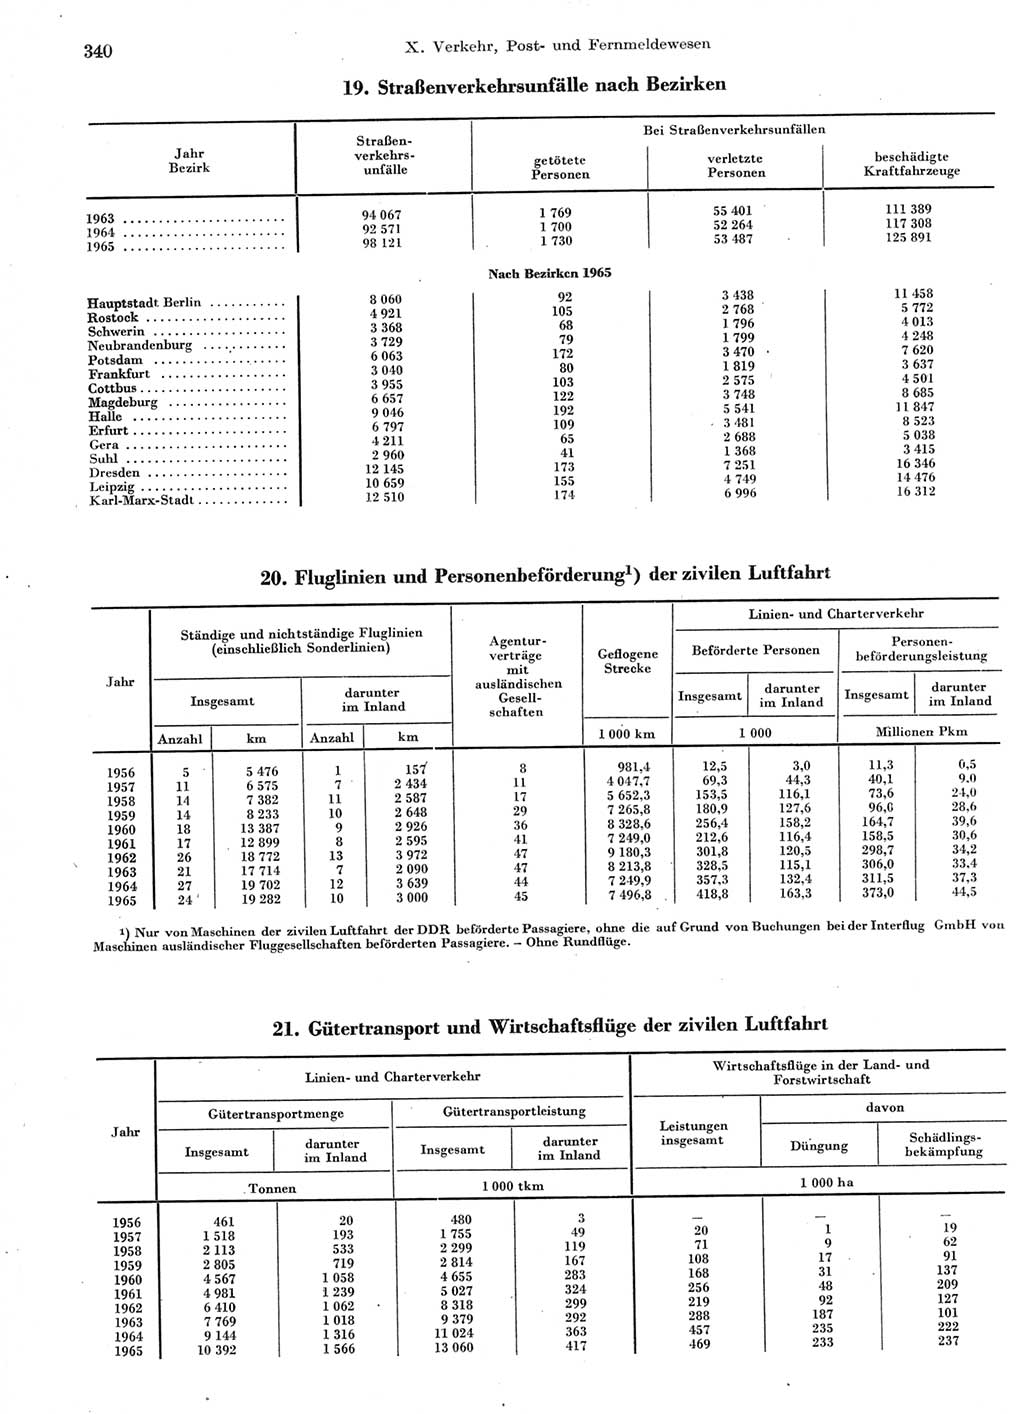 Statistisches Jahrbuch der Deutschen Demokratischen Republik (DDR) 1966, Seite 340 (Stat. Jb. DDR 1966, S. 340)